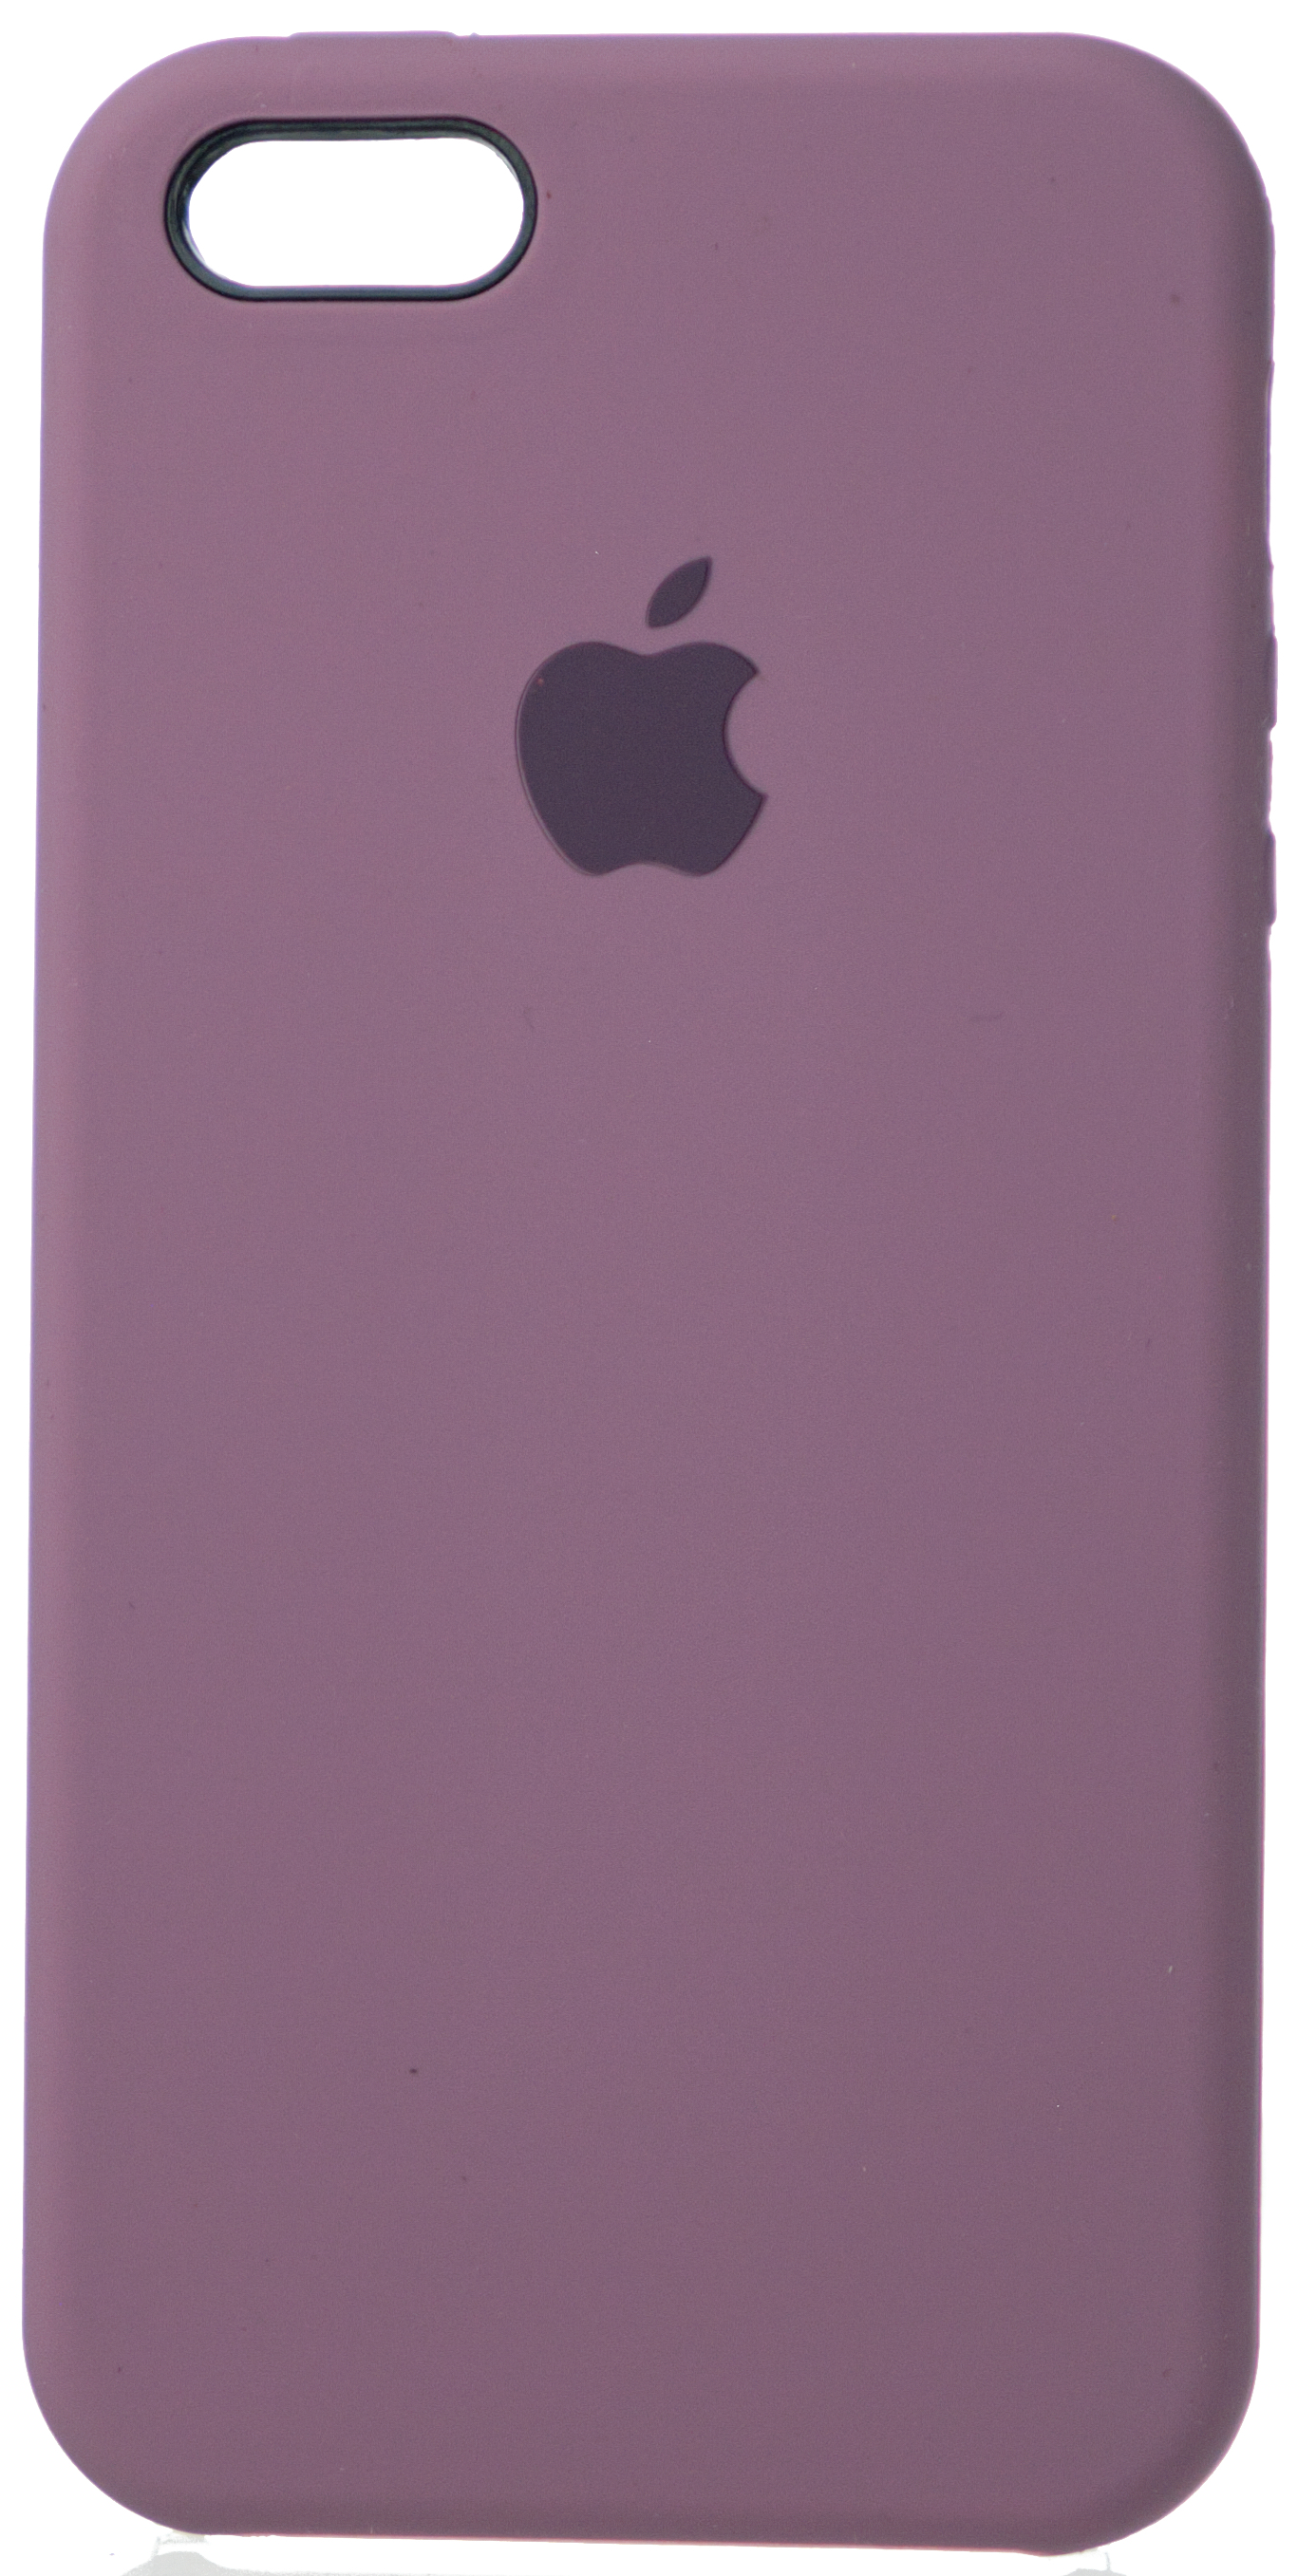 Чехол Silicone Case для iPhone 5/5s/SE черничный